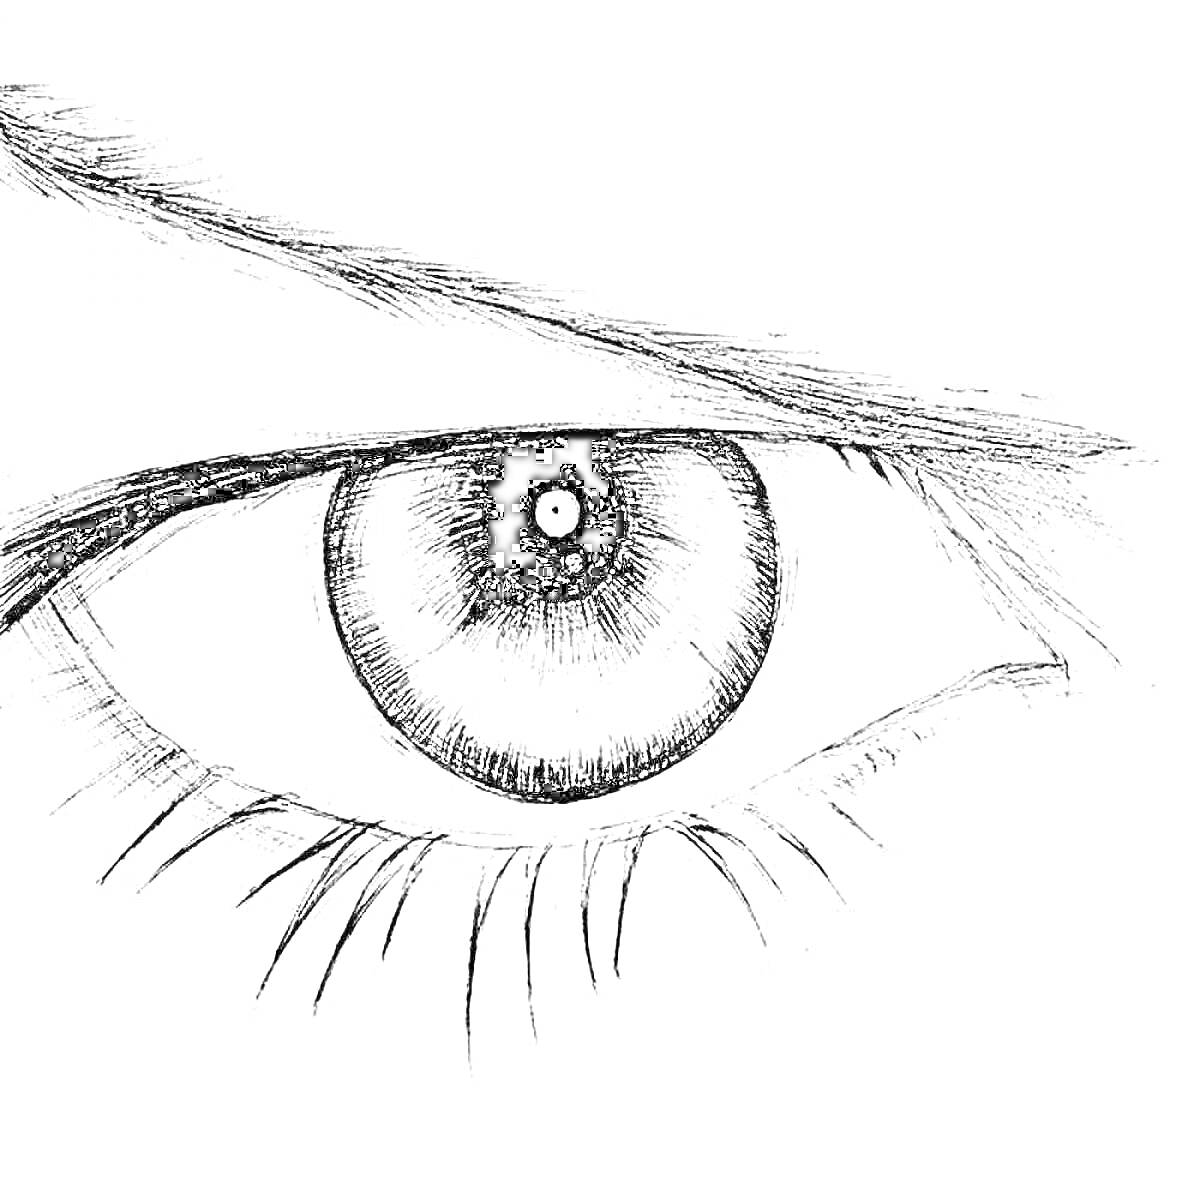 Рисунок человеческого глаза с зрачком, радужкой, ресницами и бровью